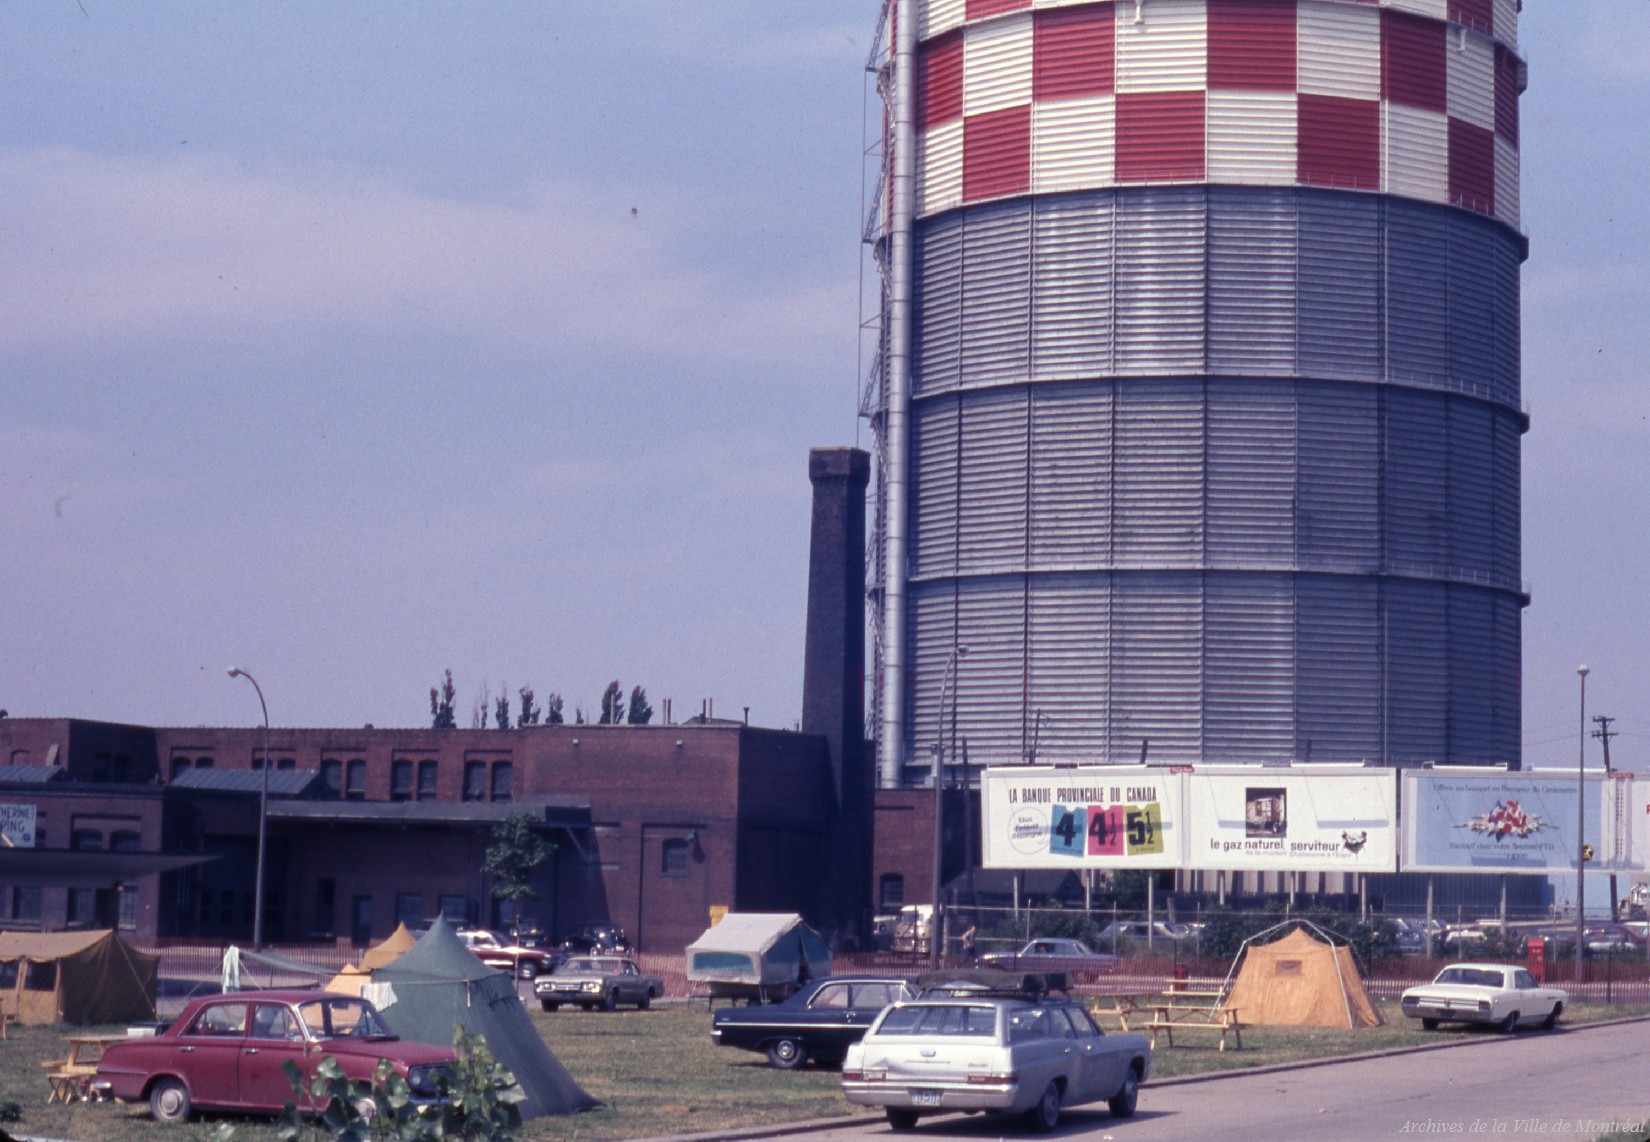 Terrain de camping près d'une raffinerie au moment d'Expo 67